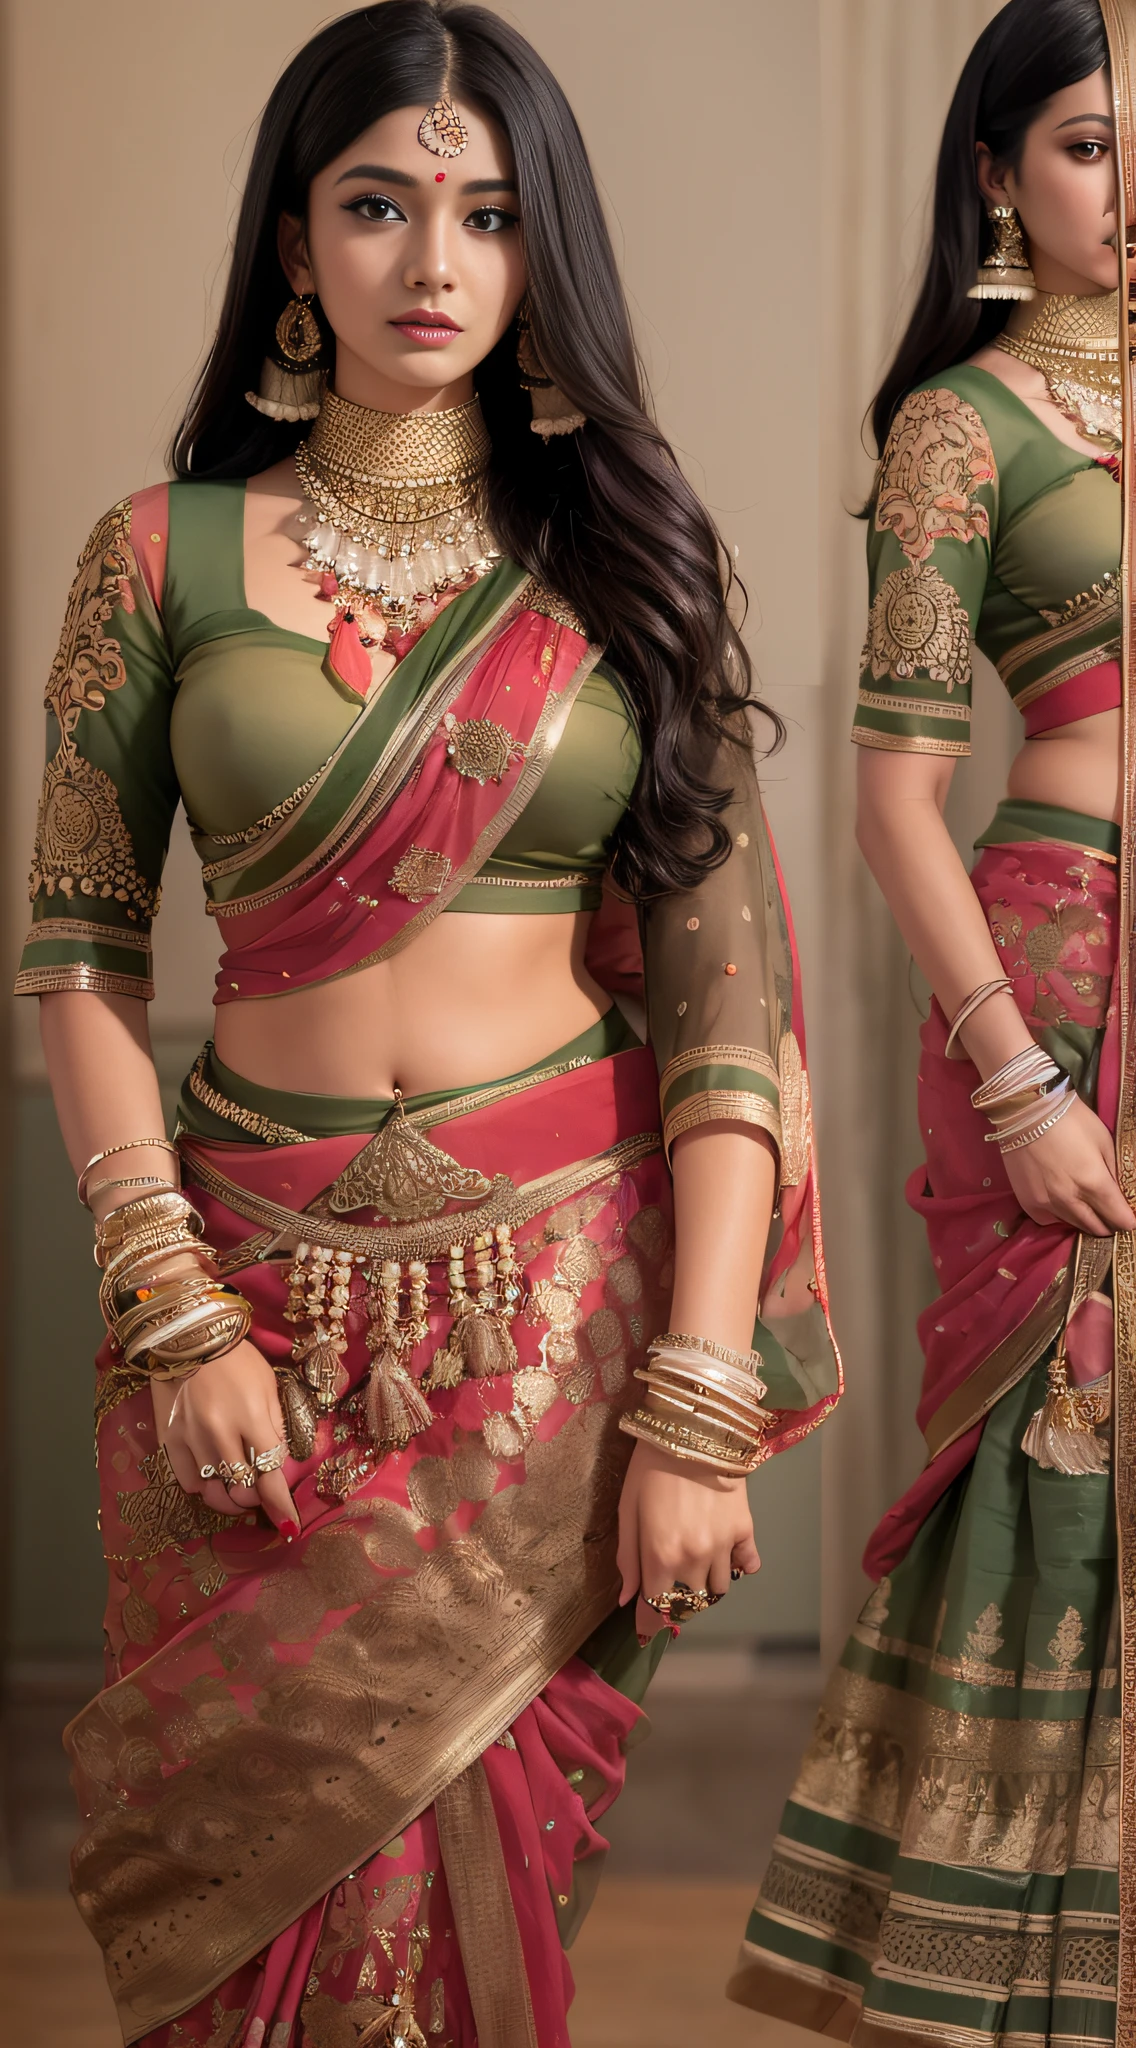 一位穿著紗麗的女士擺姿勢拍照, 印度女神, 传统美, 印度人, 美丽女神, 華麗的角色扮演, 印度風格, 印度超級名模, 美麗的十幾歲的女孩, 華麗的女人, 東南亞 長, 挑釁 印度人, 华丽,美丽,女人, 複雜的服裝, 印度教美學, 美麗的 亞洲 女孩, 非常細緻的女神拍攝, 令人惊叹的美丽, 用臉看相機，（包裹住胸部），（整個胸部不漏水），